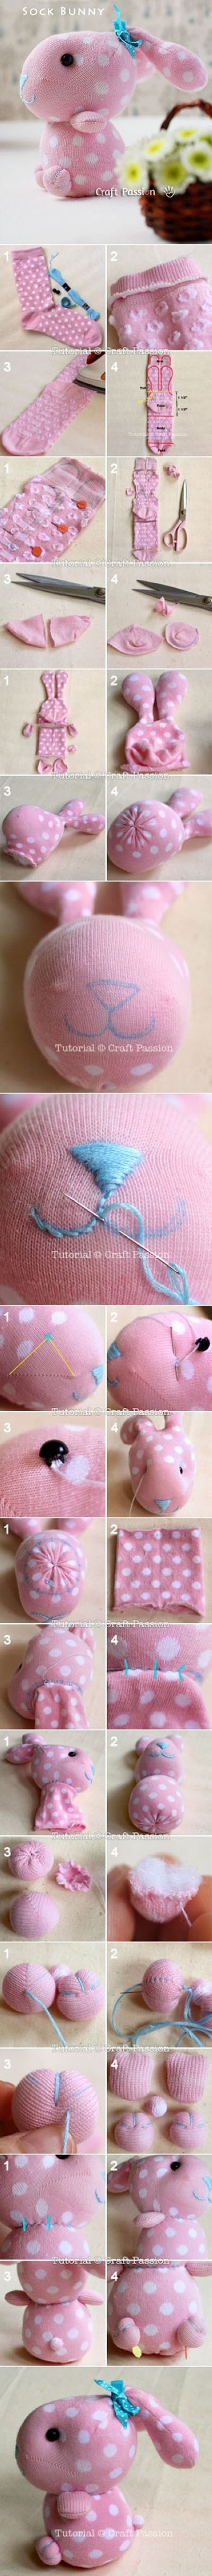 17 DIY Sock Bunny Sewing Tutorial 223ea5